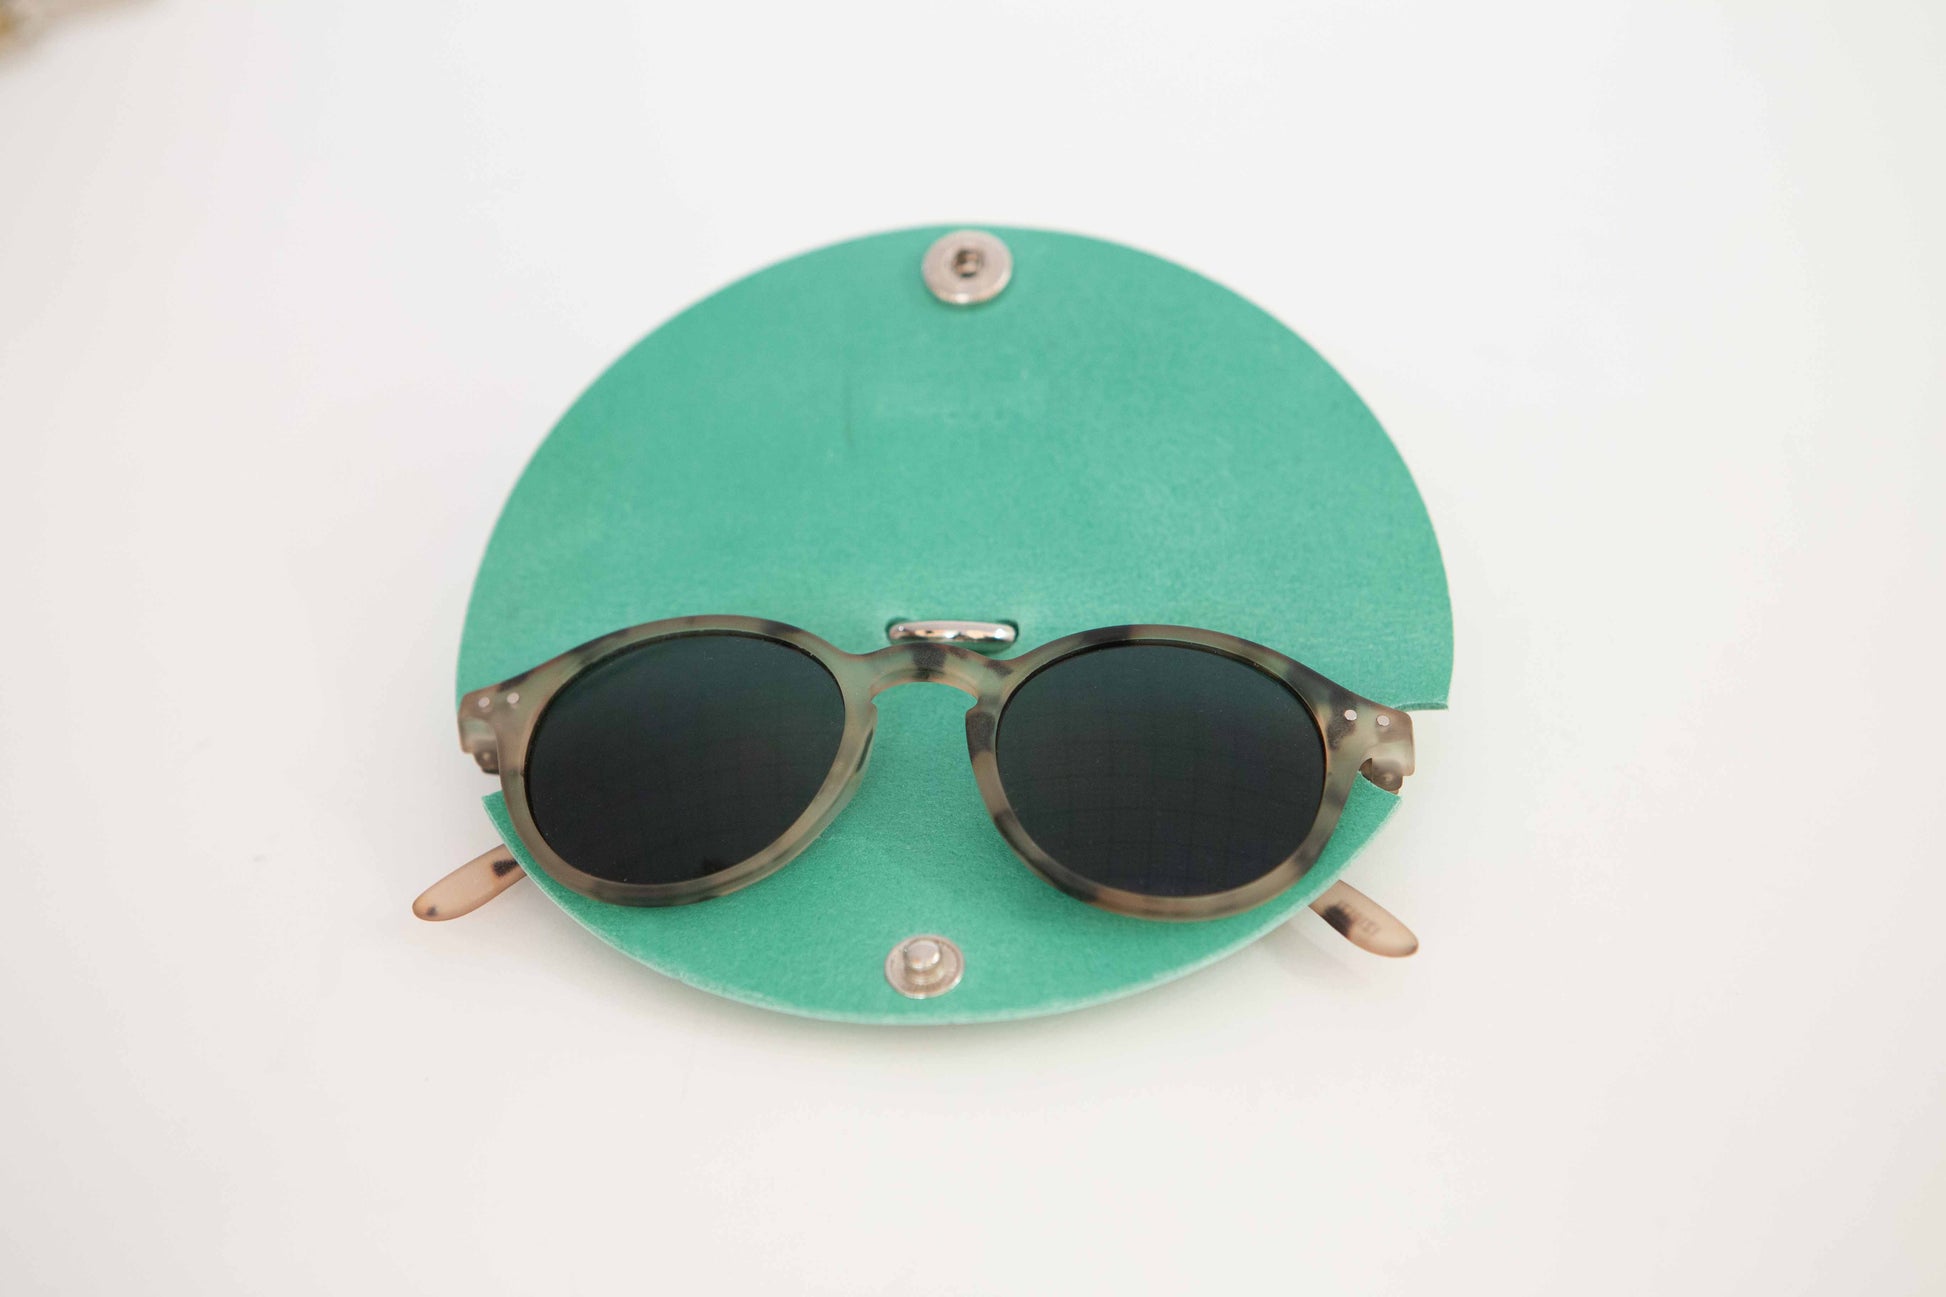 Mags Sunglasses Case - Scilla